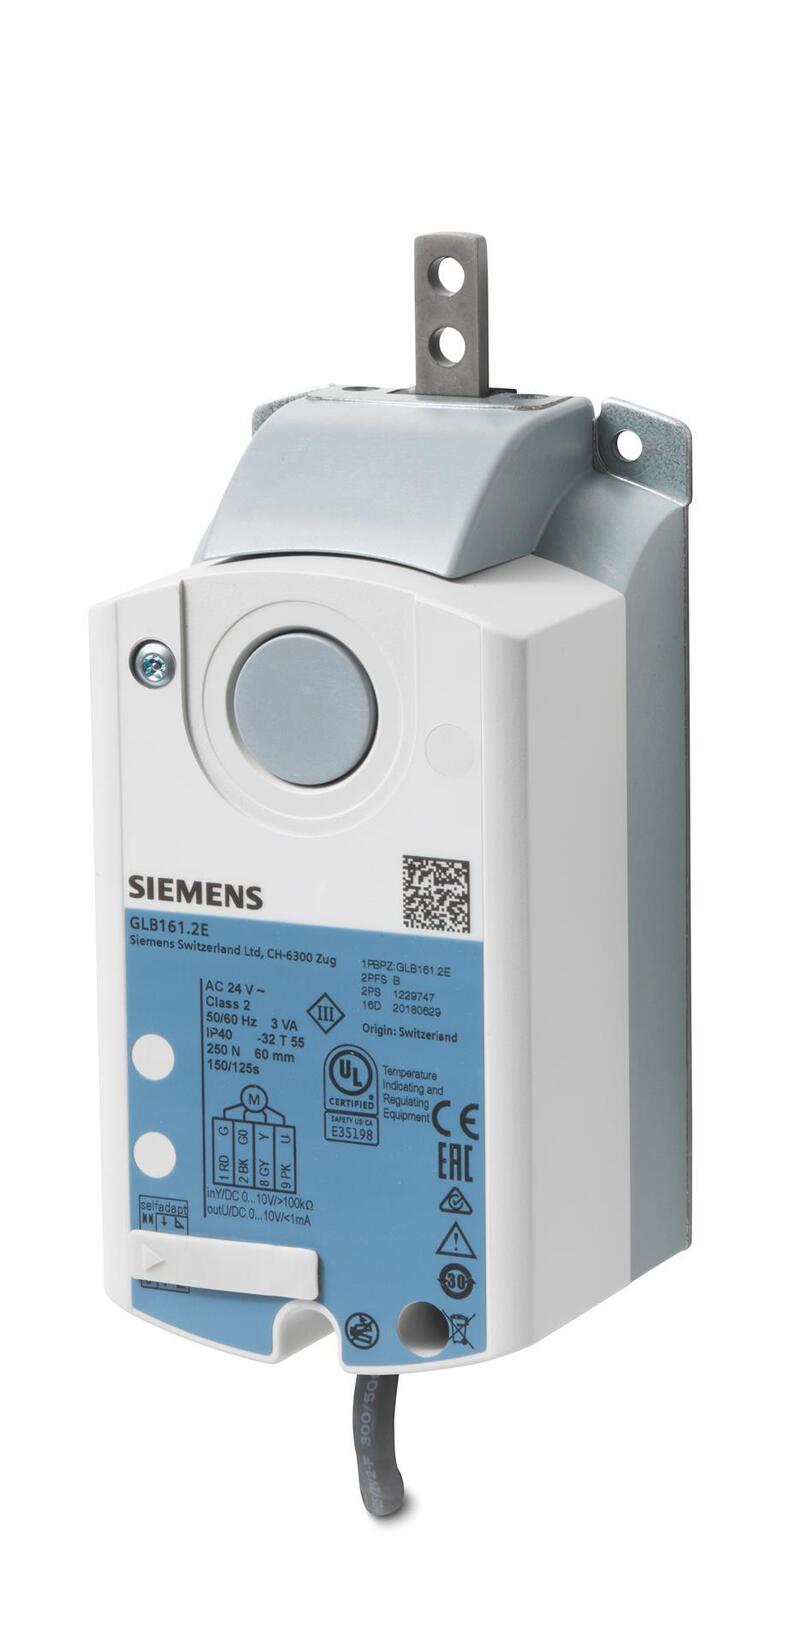 Привод Siemens Glb 346.1 E